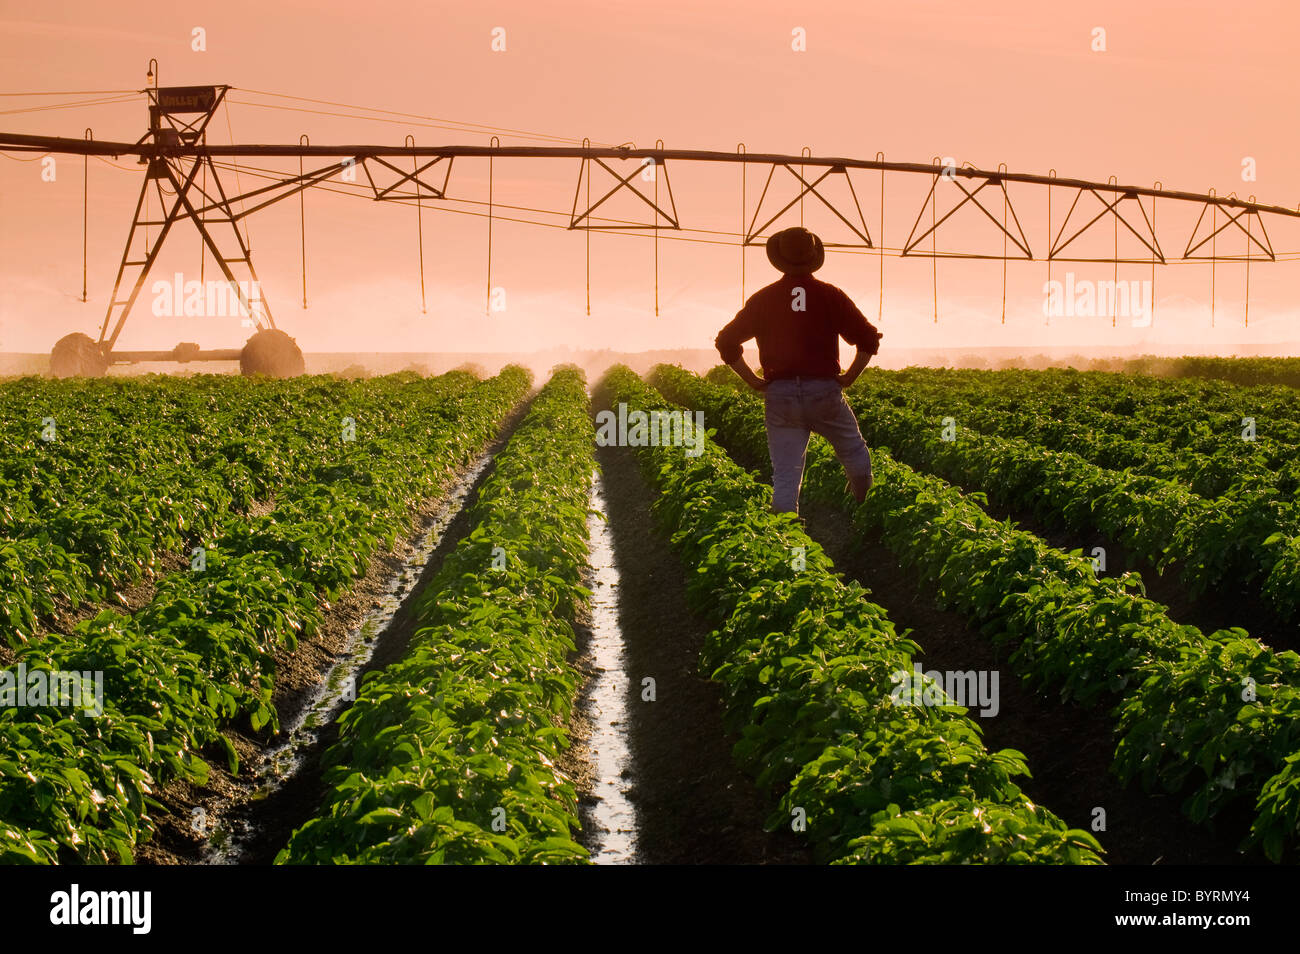 Un agriculteur est à sa croissance moyenne l'observation d'un champ de pommes de terre du système d'irrigation à pivot central à l'opération en fin d'après-midi la lumière. Banque D'Images